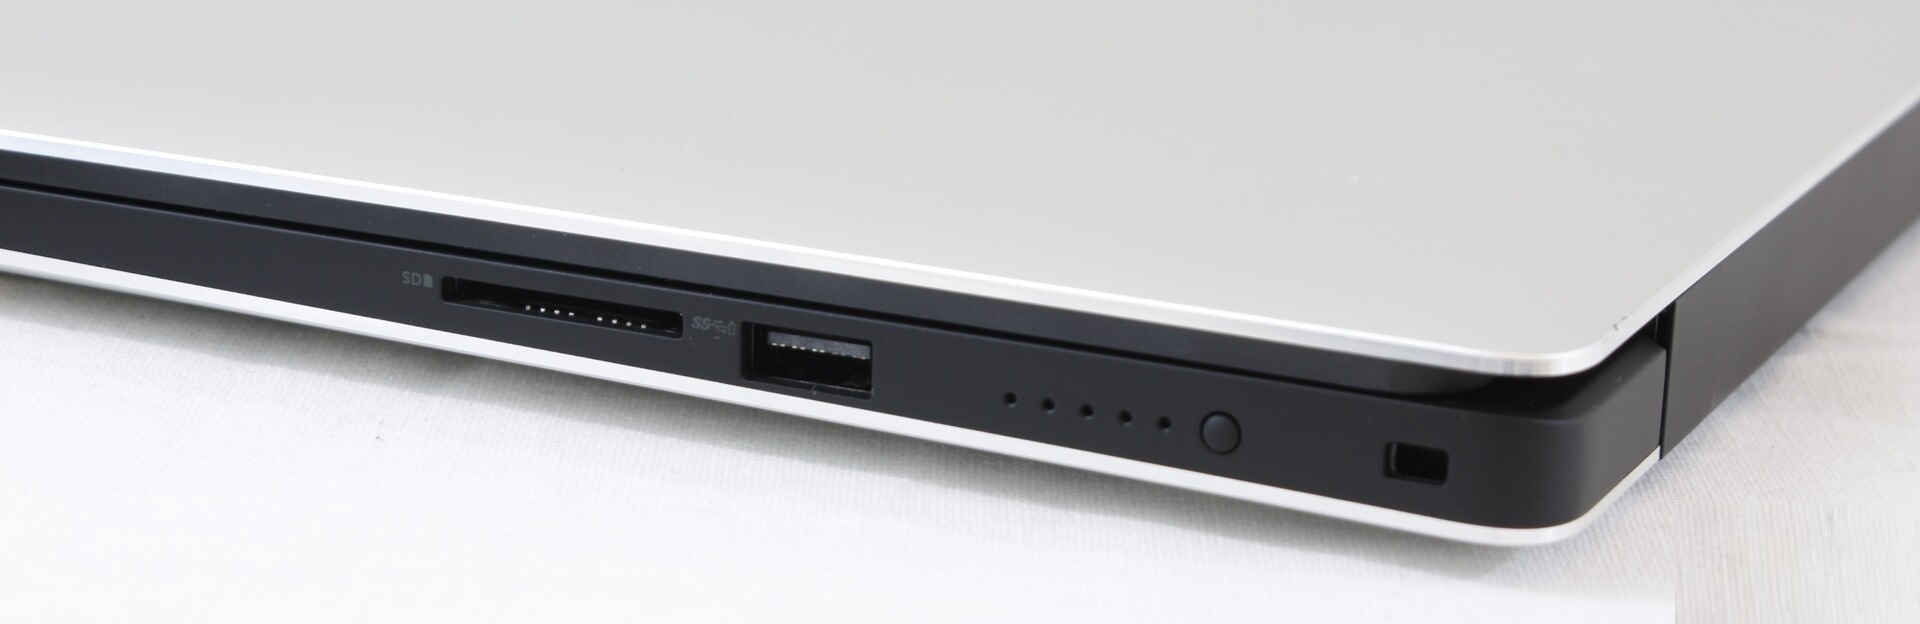 Đánh giá laptop Dell Precision 5540: Đẹp, mạnh mẽ, thời lượng pin lâu, Chuyên trang tư vấn về laptop